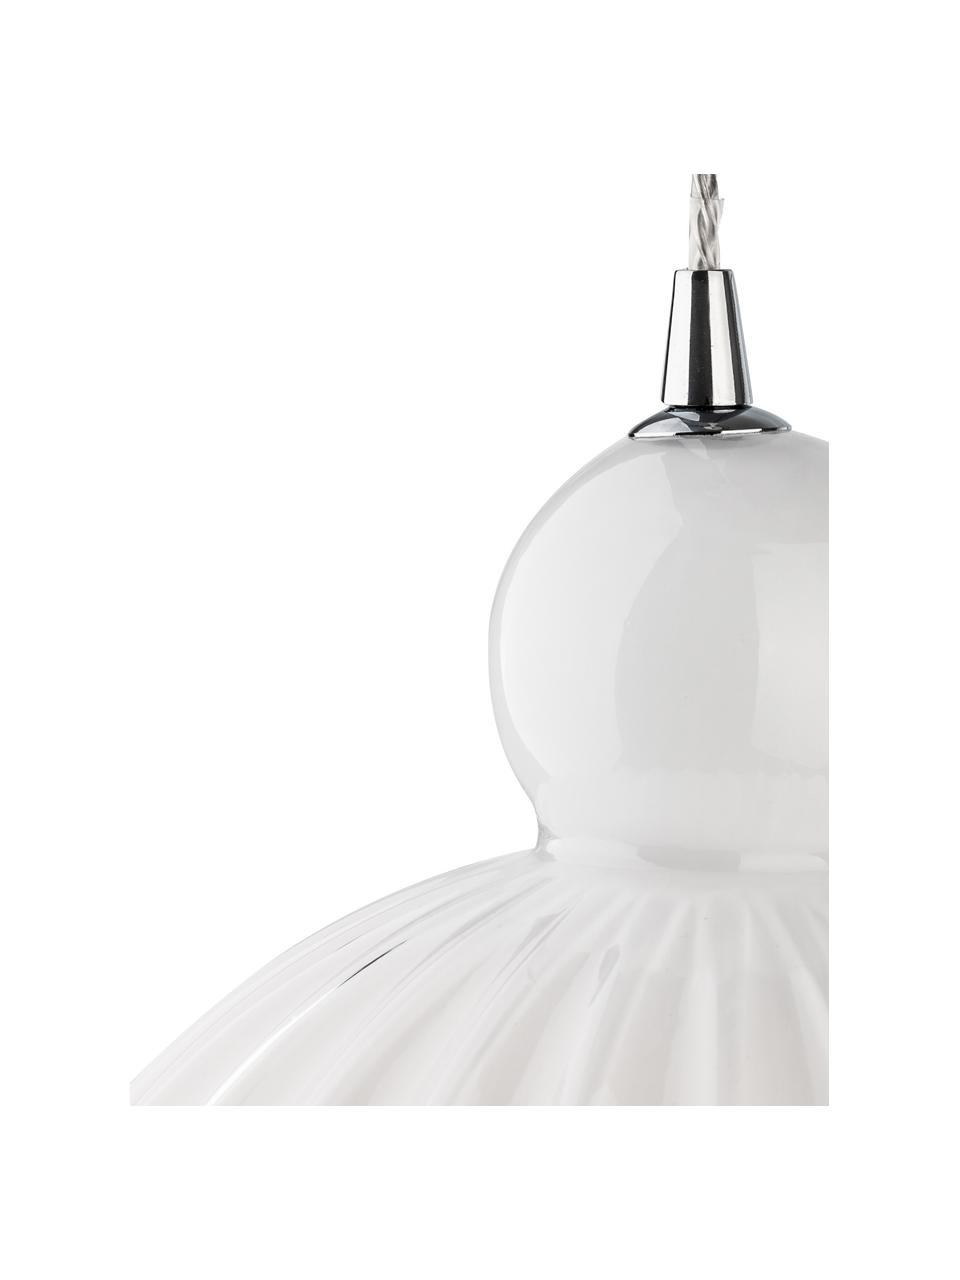 Lámpara de techo pequeña de vidrio opalino Odell, Pantalla: vidrio, Anclaje: metal, Cable: plástico, Blanco opalino, Ø 28 x Al 36 cm